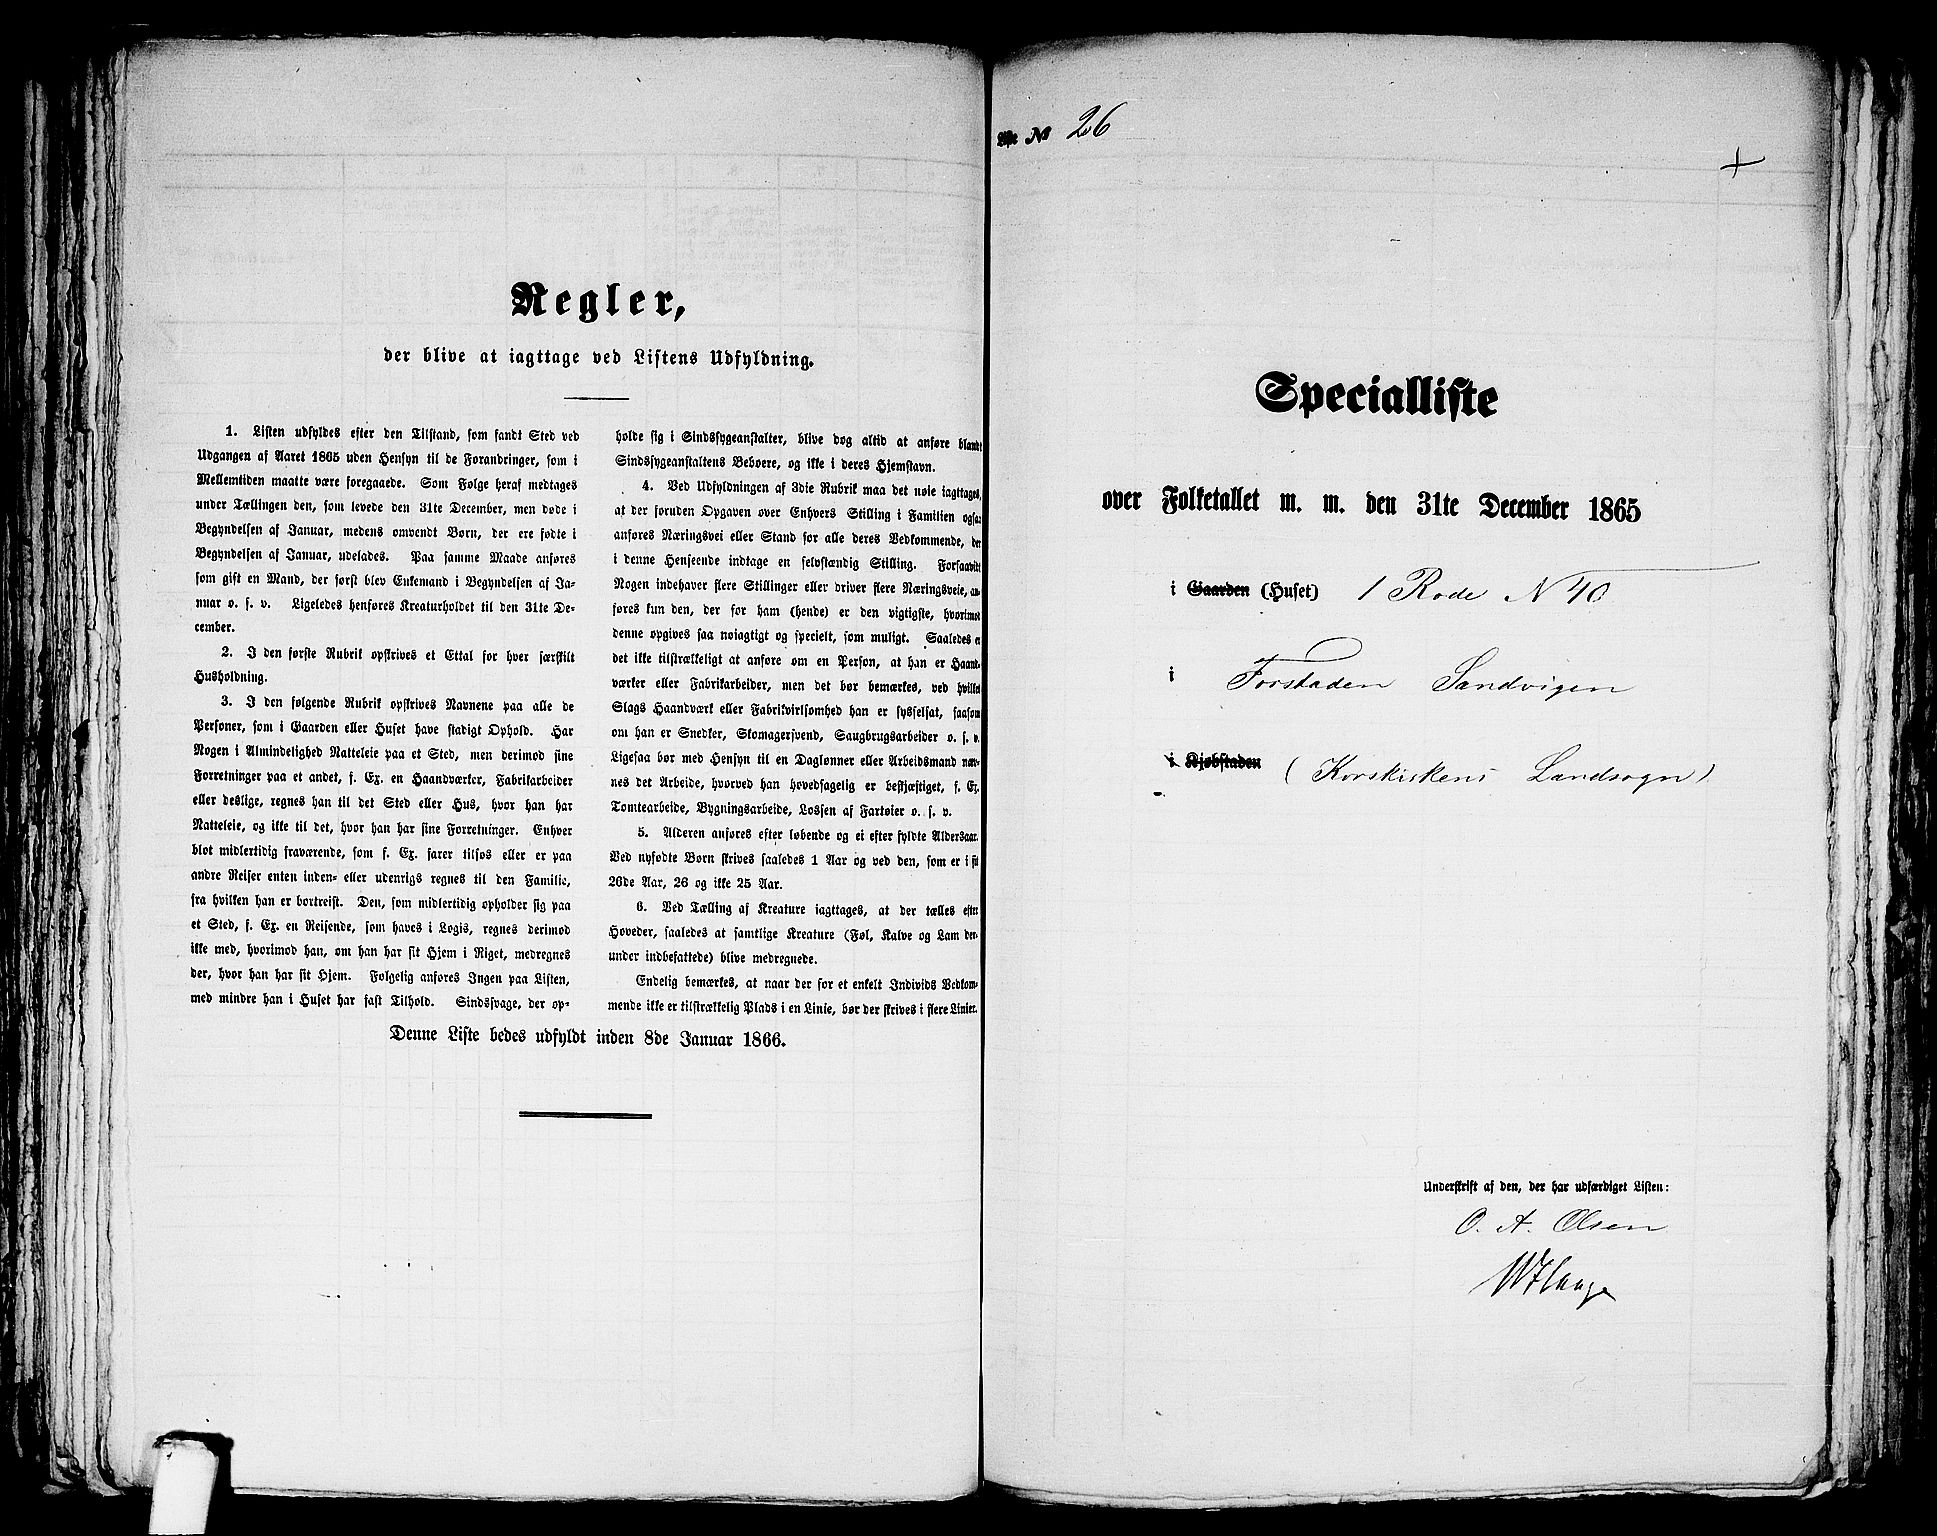 RA, Folketelling 1865 for 1281L Bergen Landdistrikt, Domkirkens landsokn og Korskirkens landsokn, 1865, s. 101